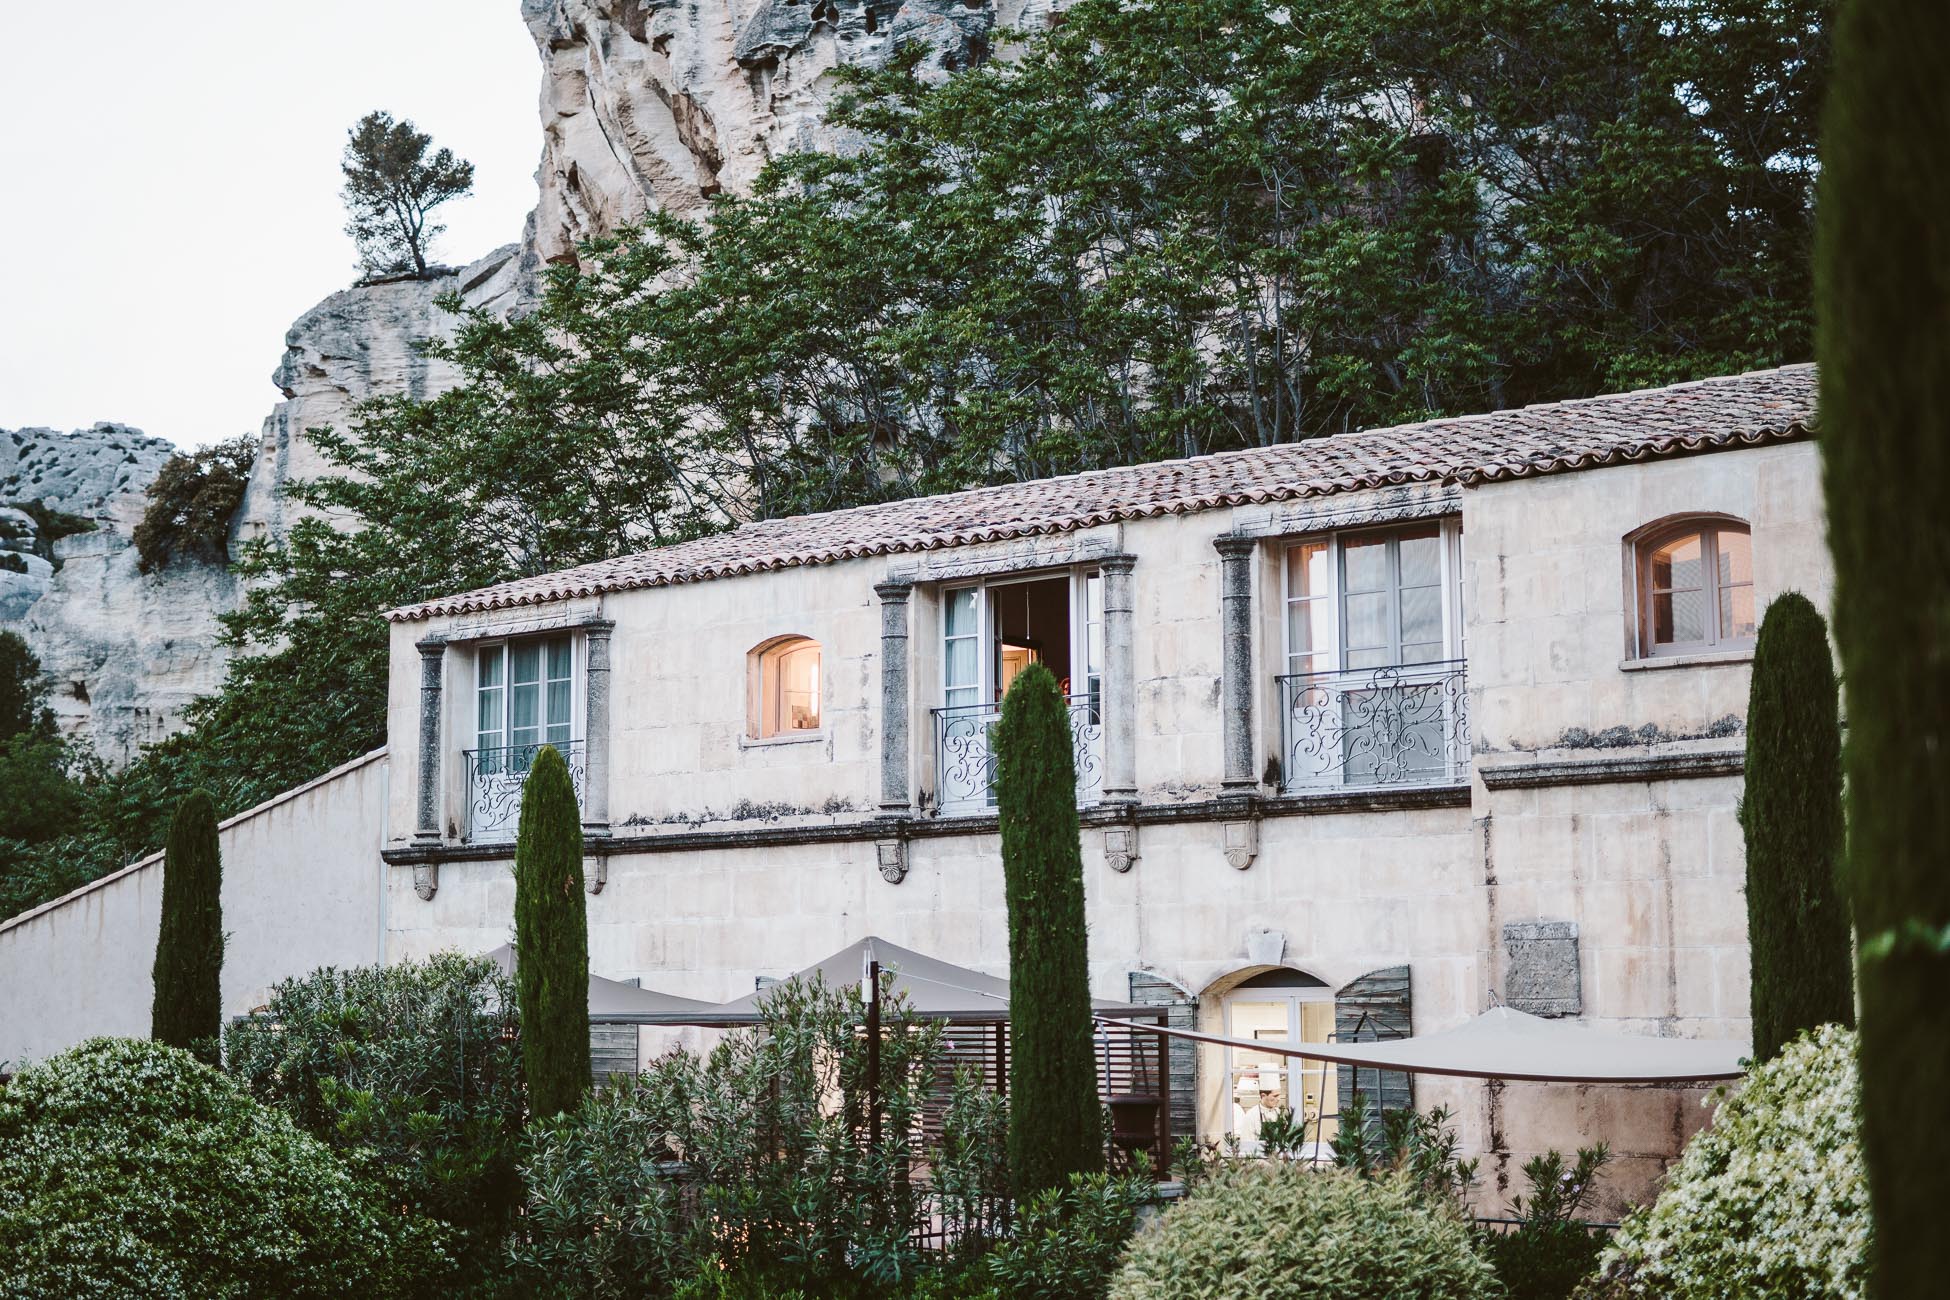 L'Oustau de Baumanière in Les Baux de Provence